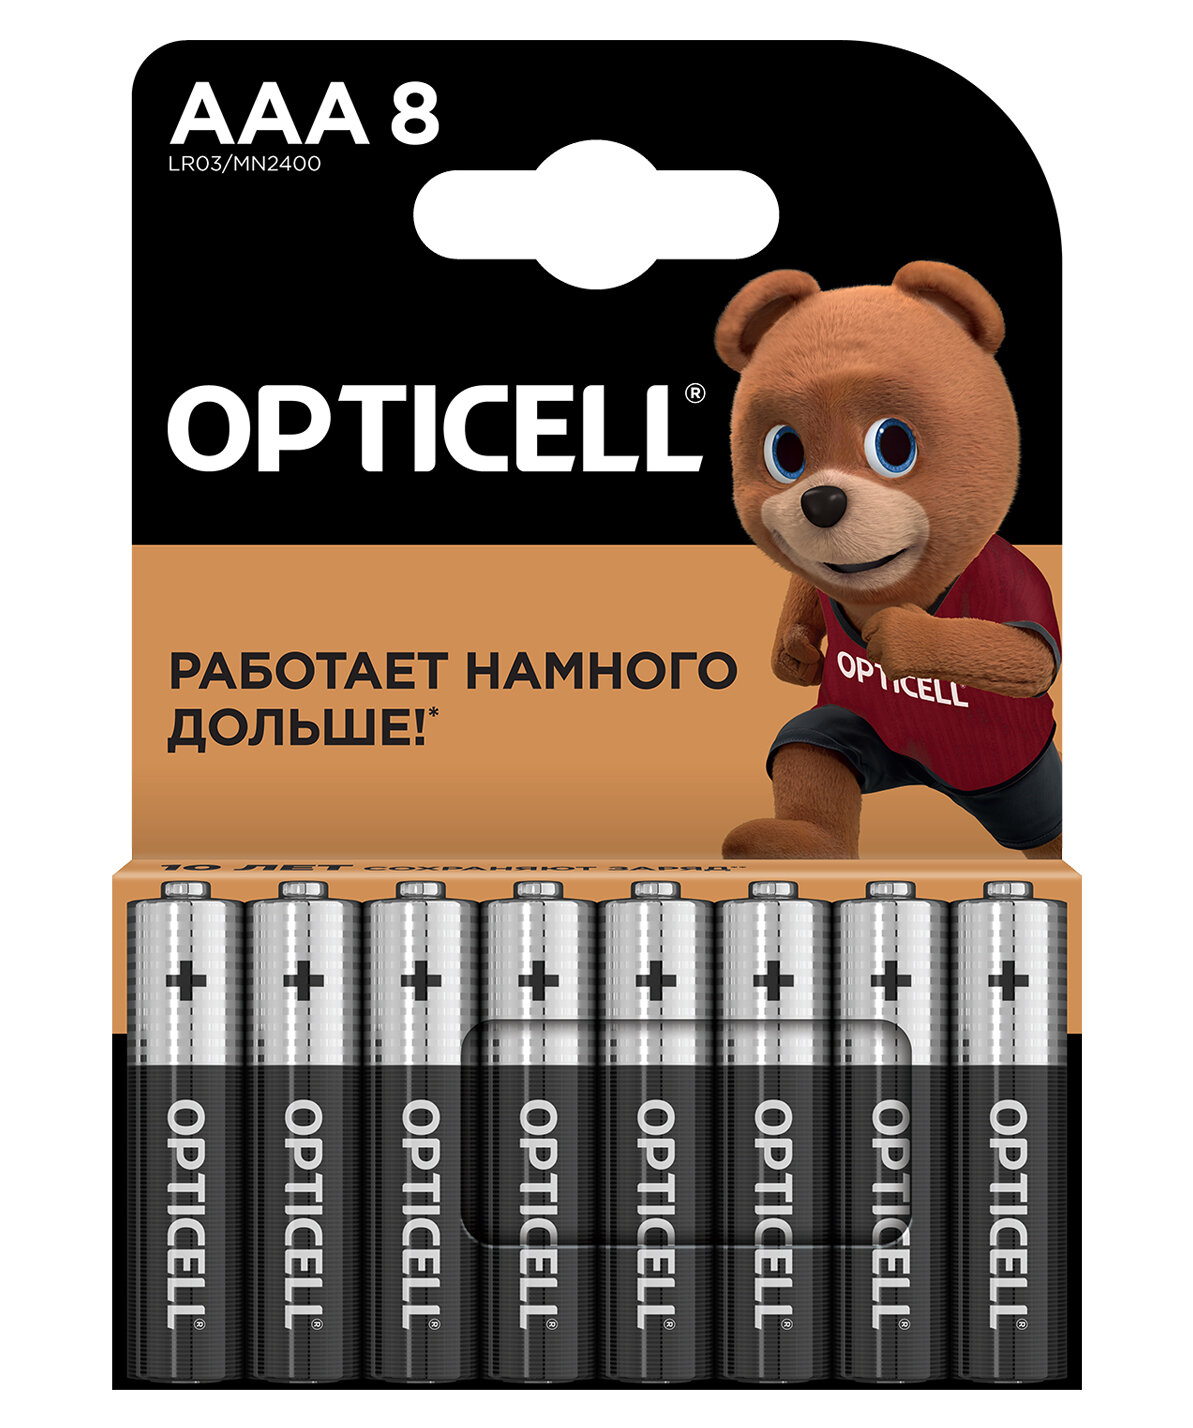 OPTICELL Батарейки AAA 8шт